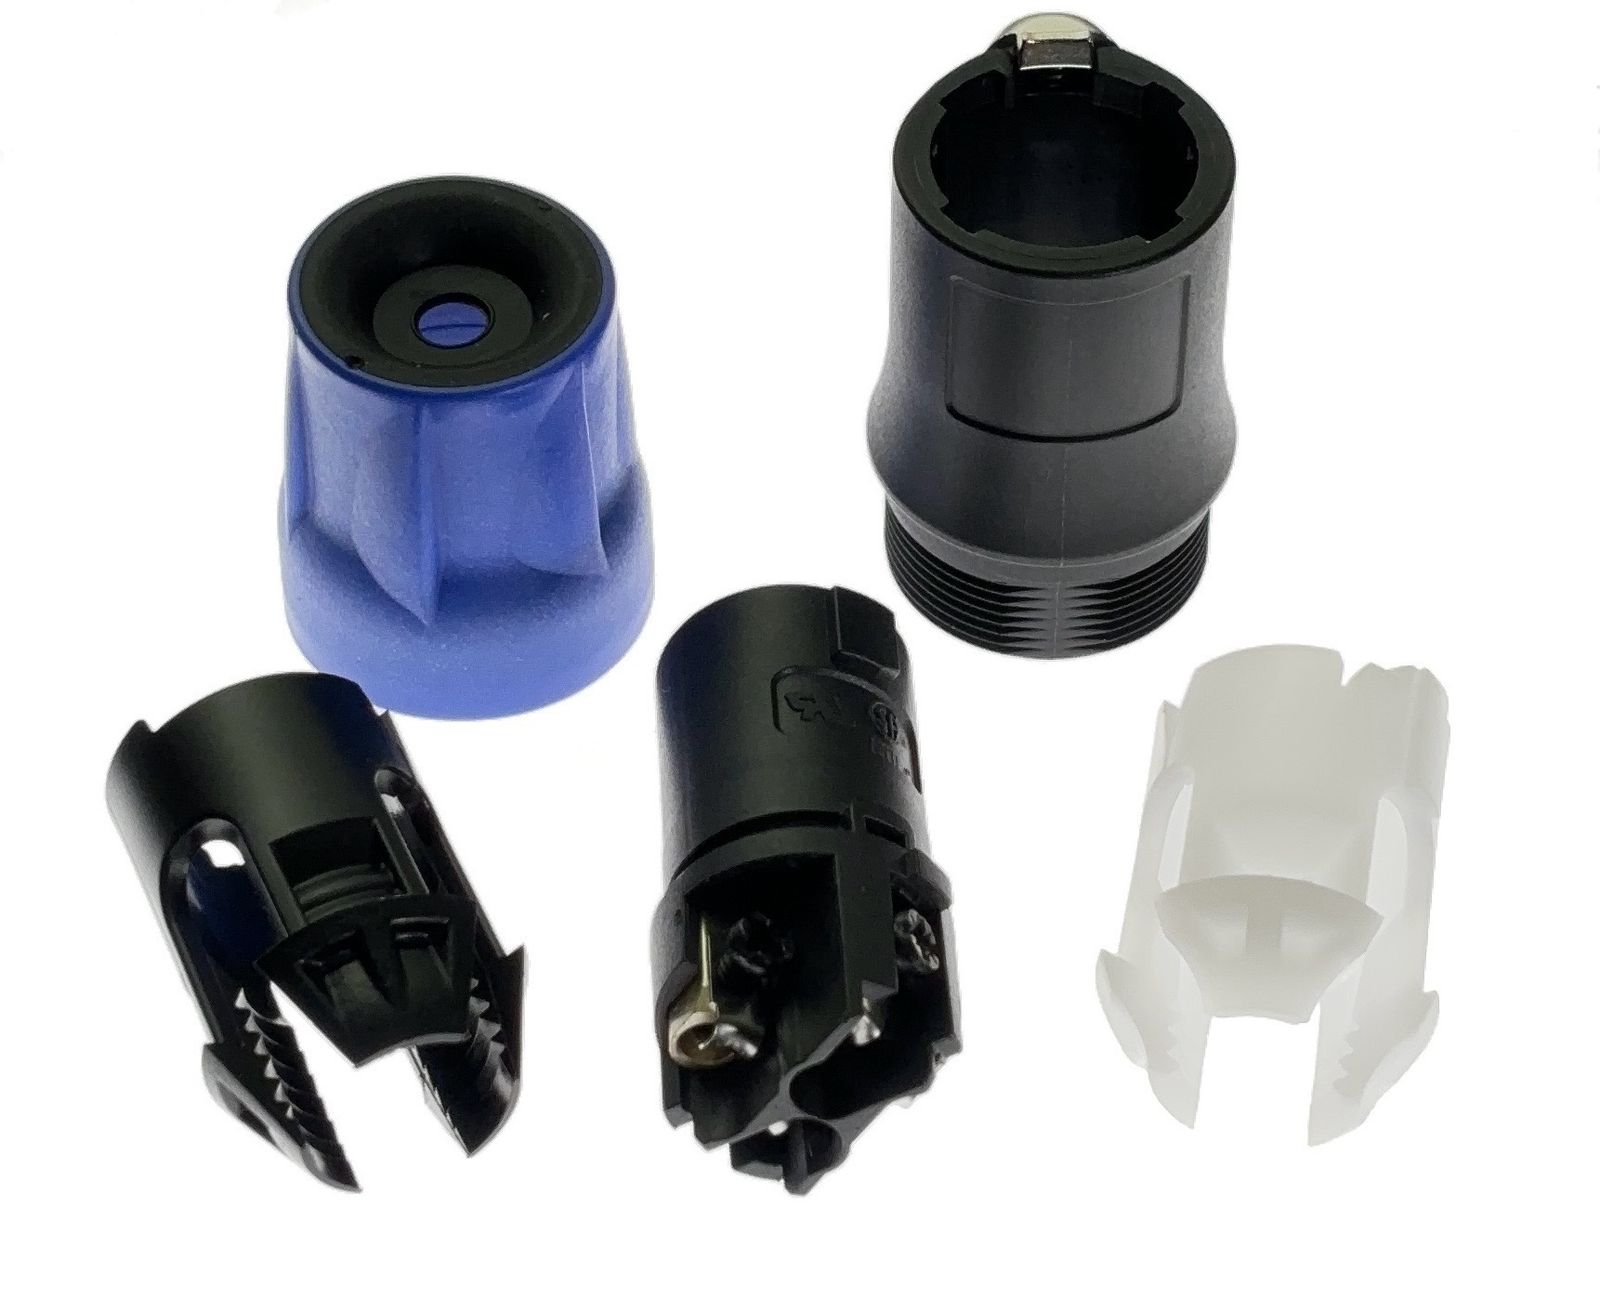 4-контактный штекер "мама" с замком, 30А rms, цанга для кабелей диаметром 5-12 мм